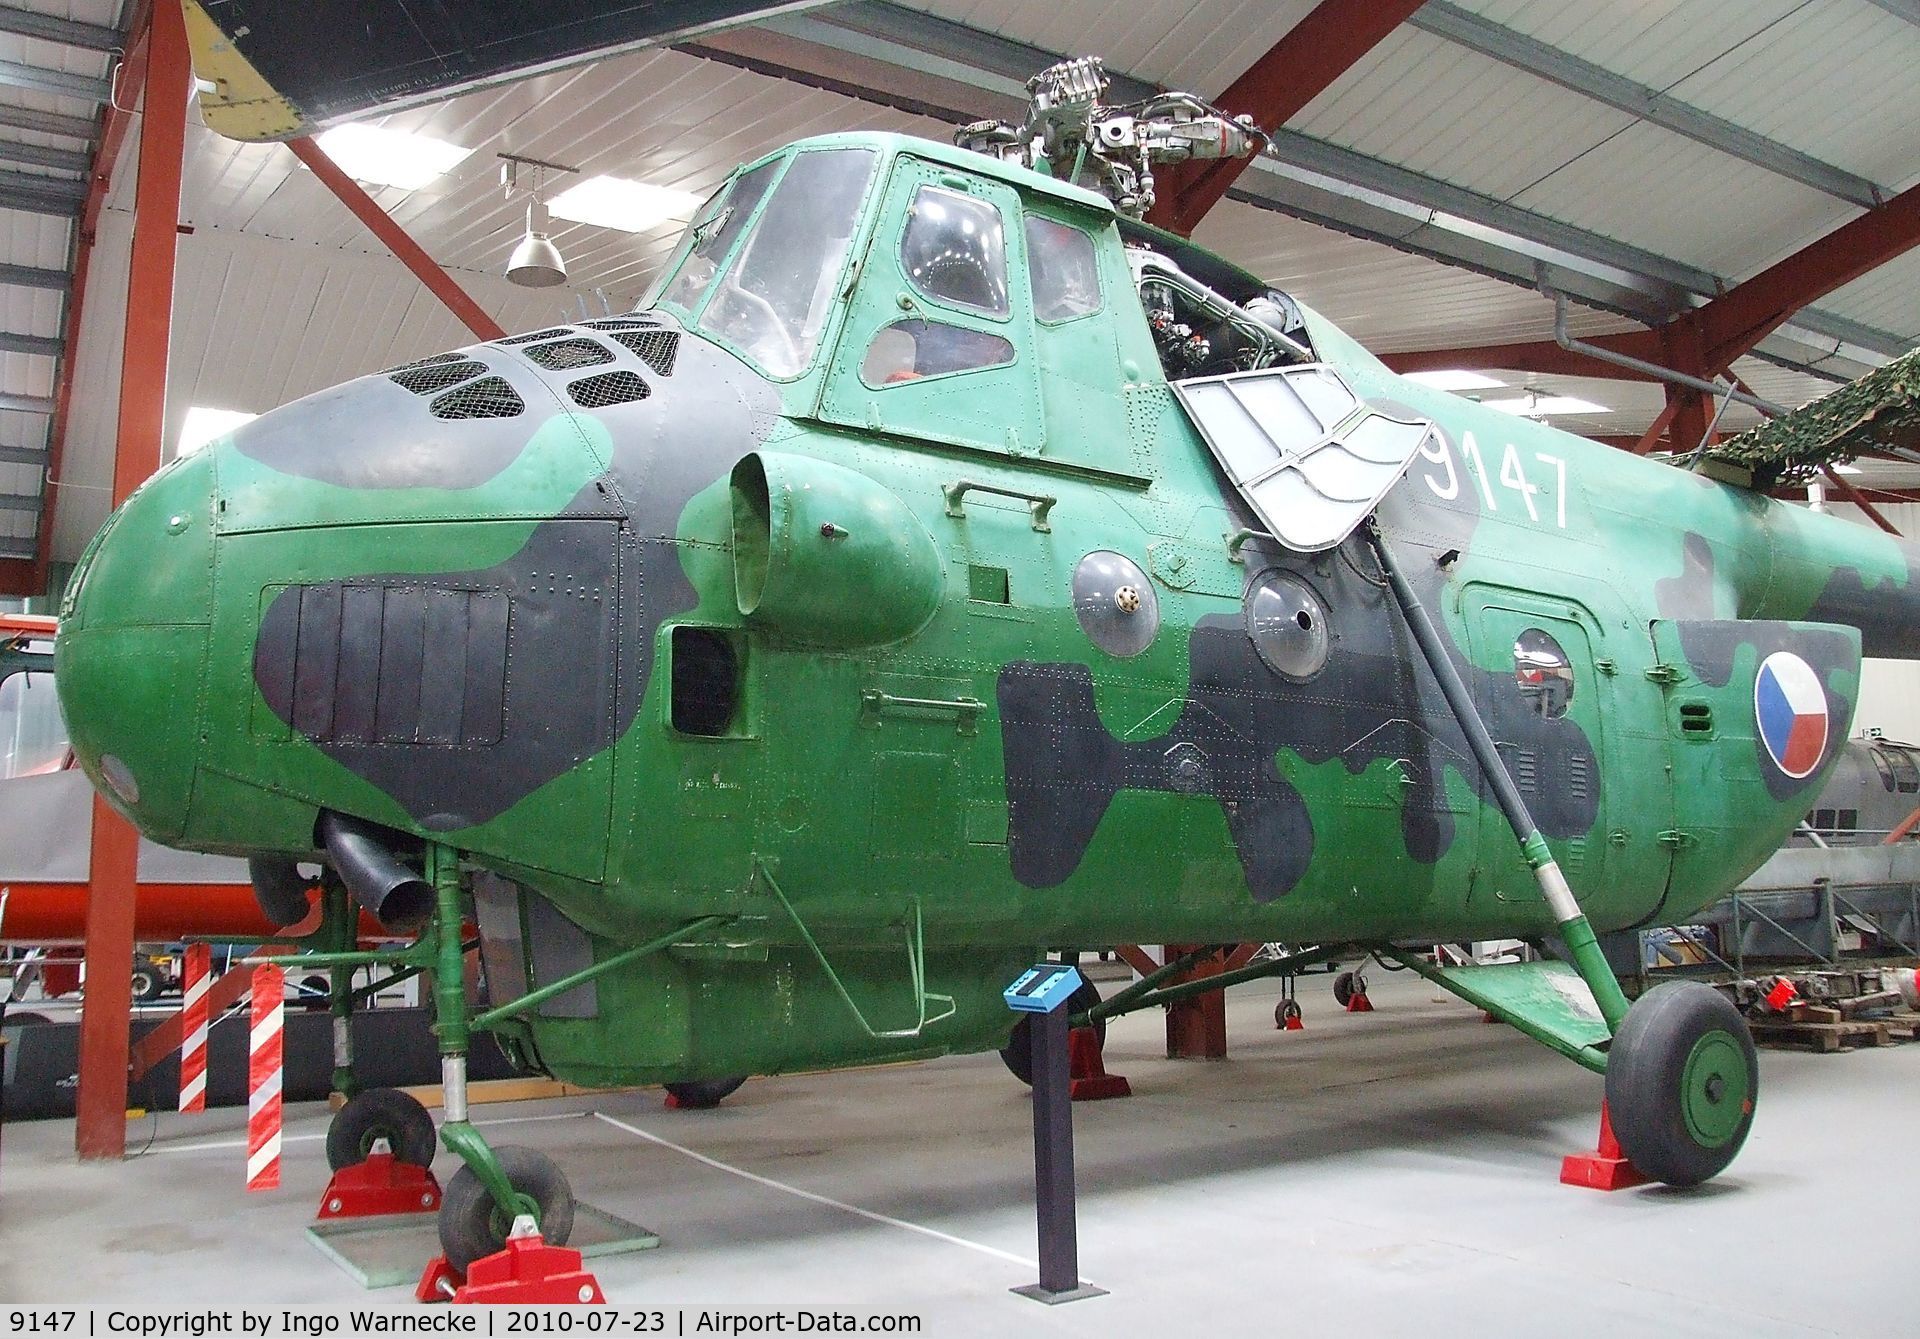 9147, Mil Mi-4 Hound C/N 09147, Mil Mi-4 Hound at the Helicopter Museum, Weston-super-Mare